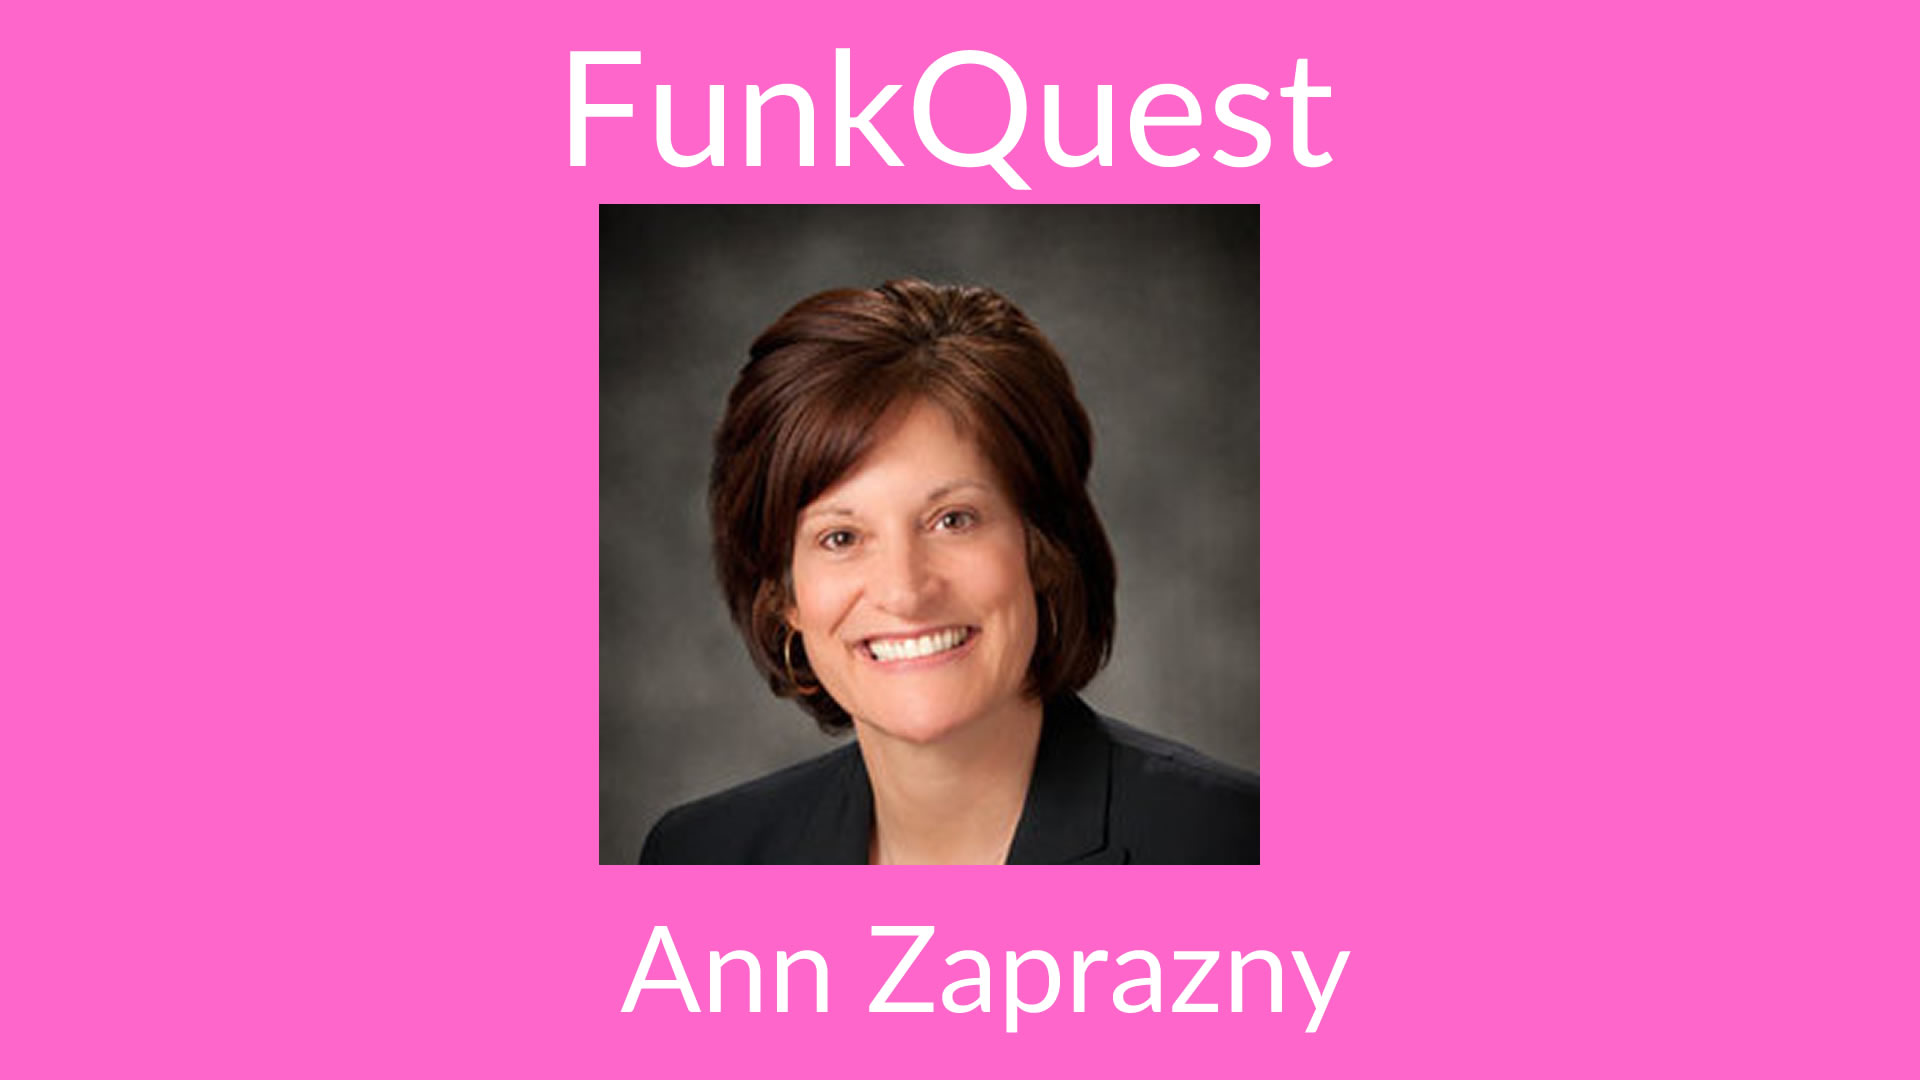 FunkQuest Ann Zaprazny